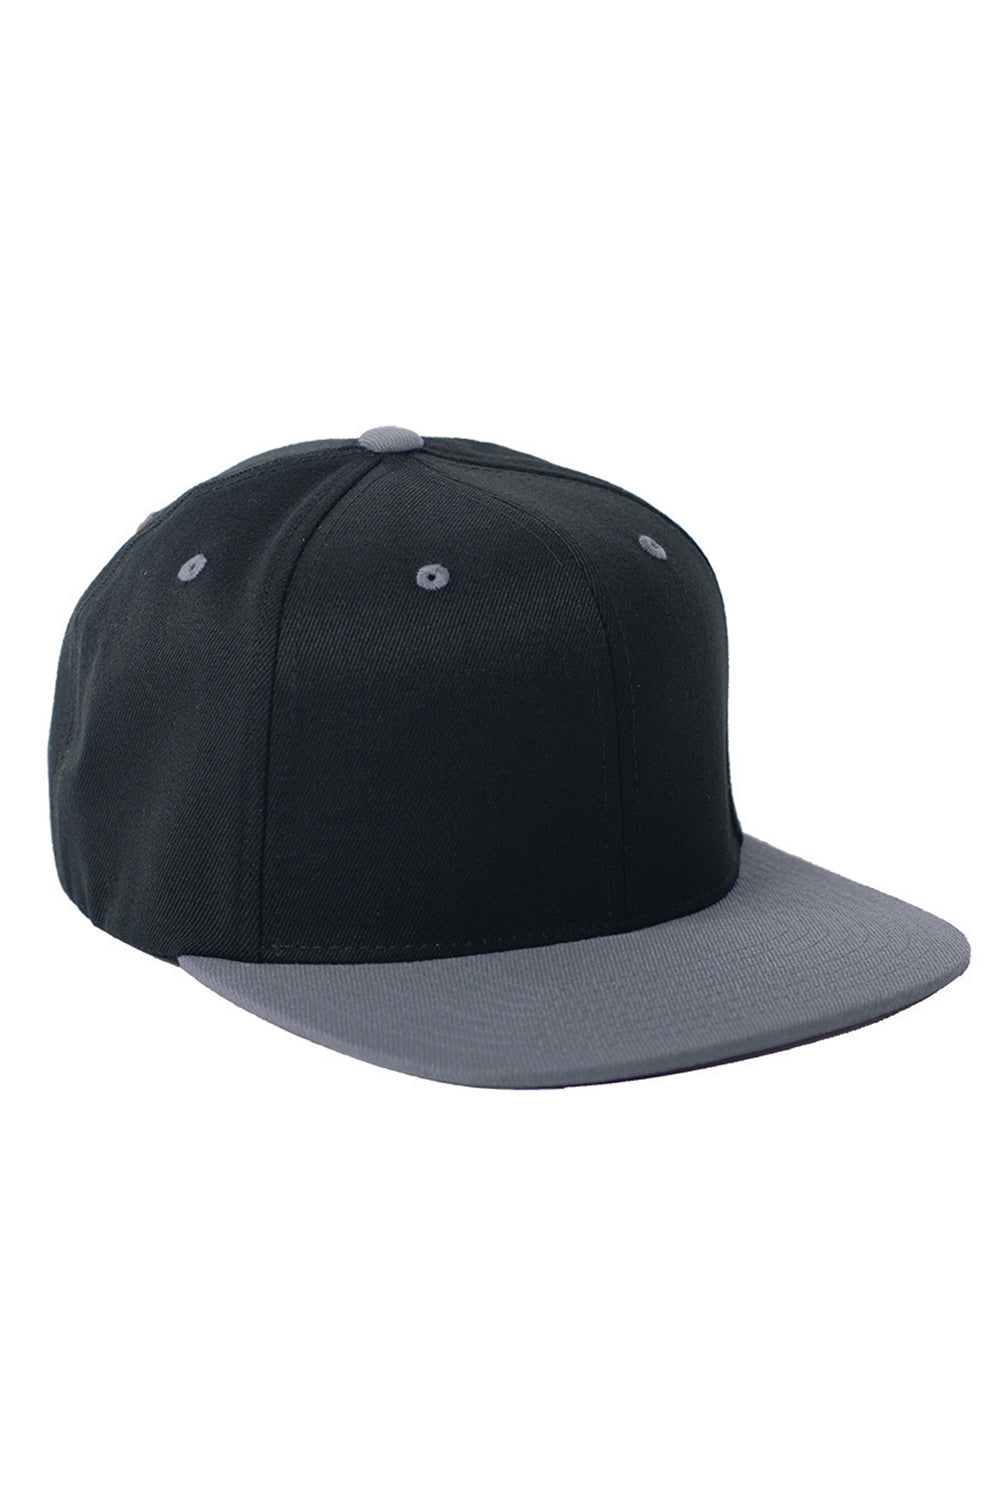 Flexfit 110FT Mens Adjustable Hat Black/Grey Front